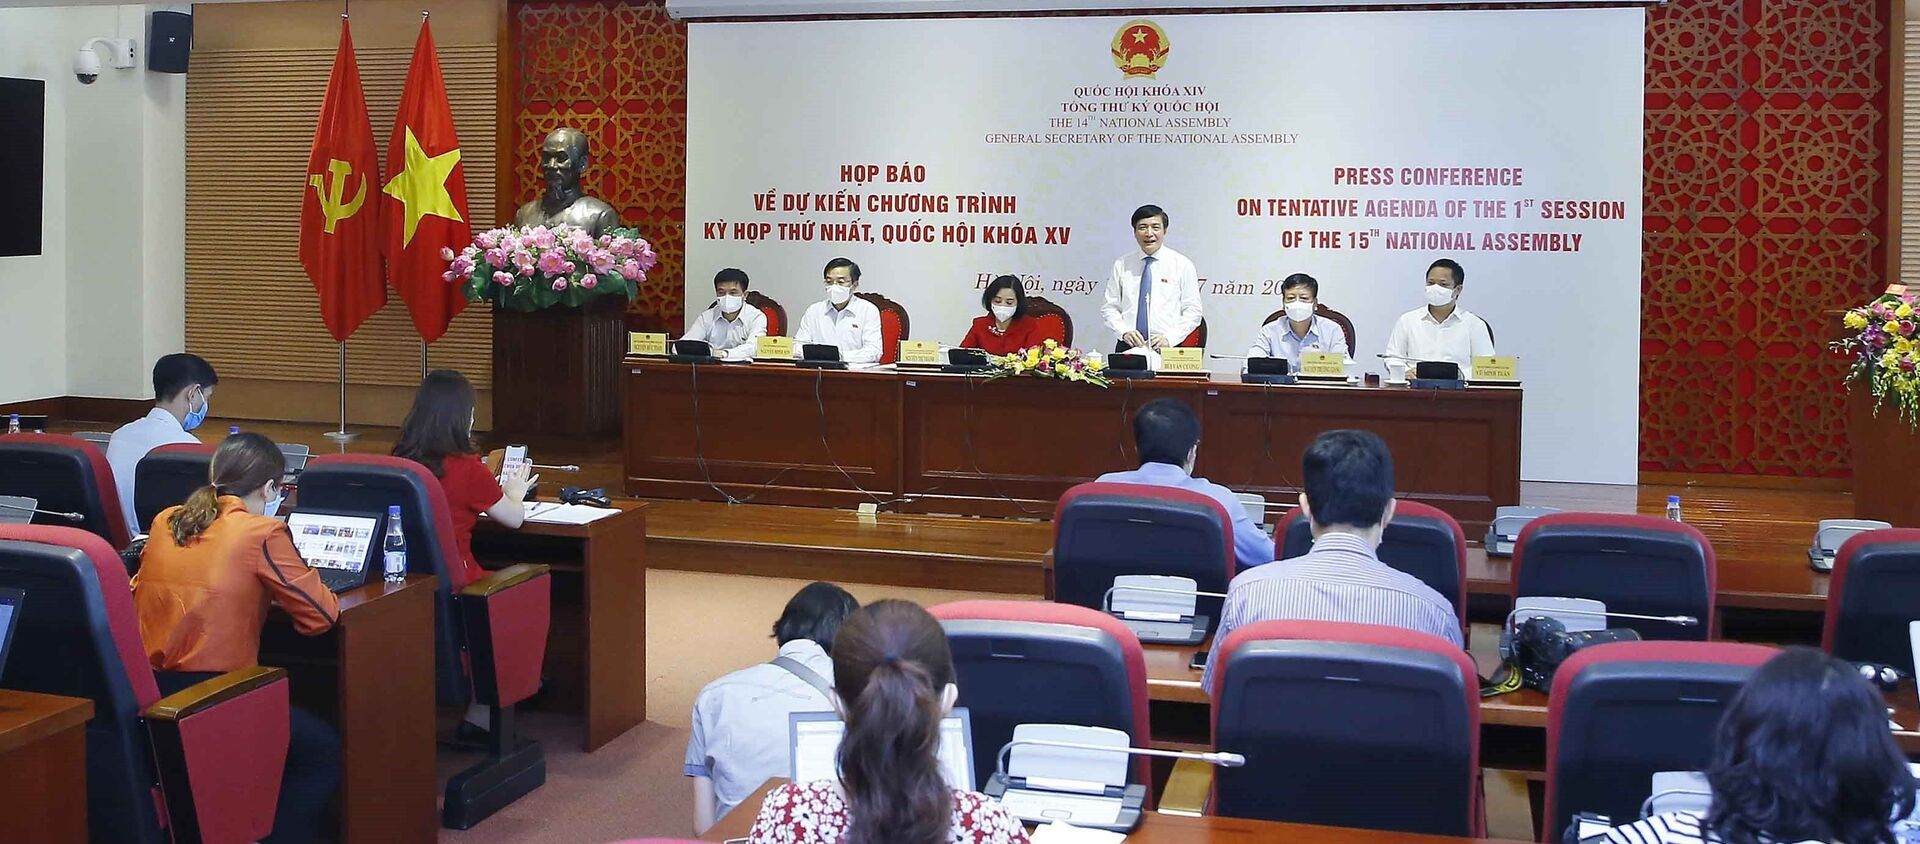 Họp báo về dự kiến chương trình Kỳ họp thứ nhất, Quốc hội khóa XV - Sputnik Việt Nam, 1920, 17.07.2021